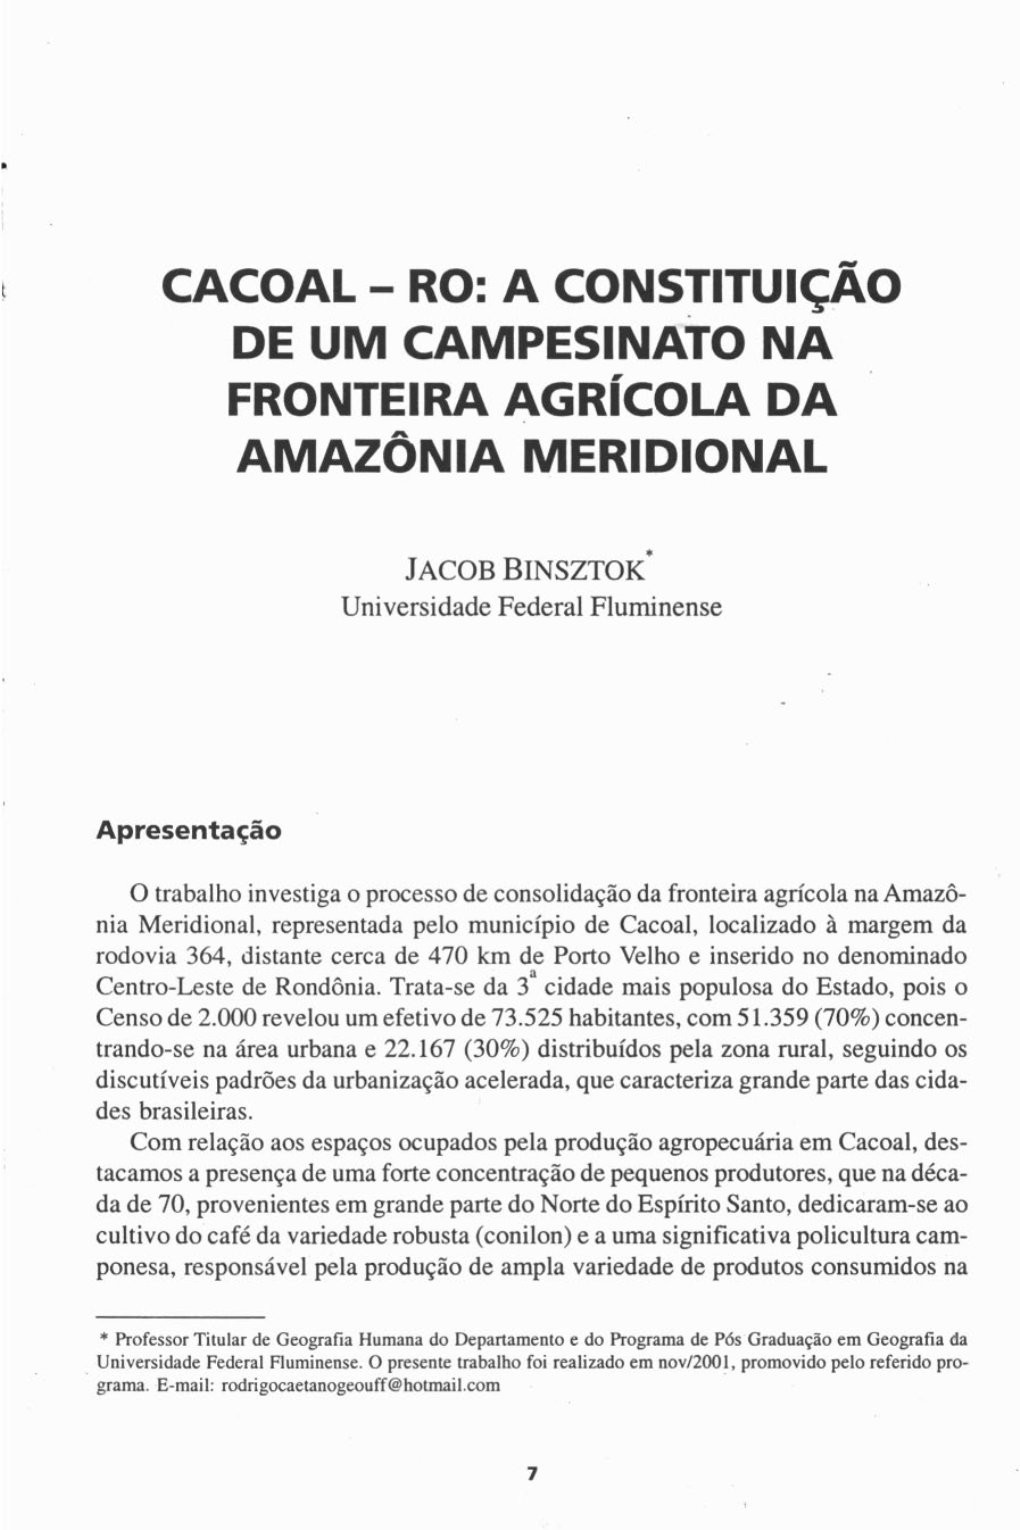 Cacoal - Ro: a Constituiçáo De Um Campesinato Na Fronteira Agr~Colada Amazonia Meridional